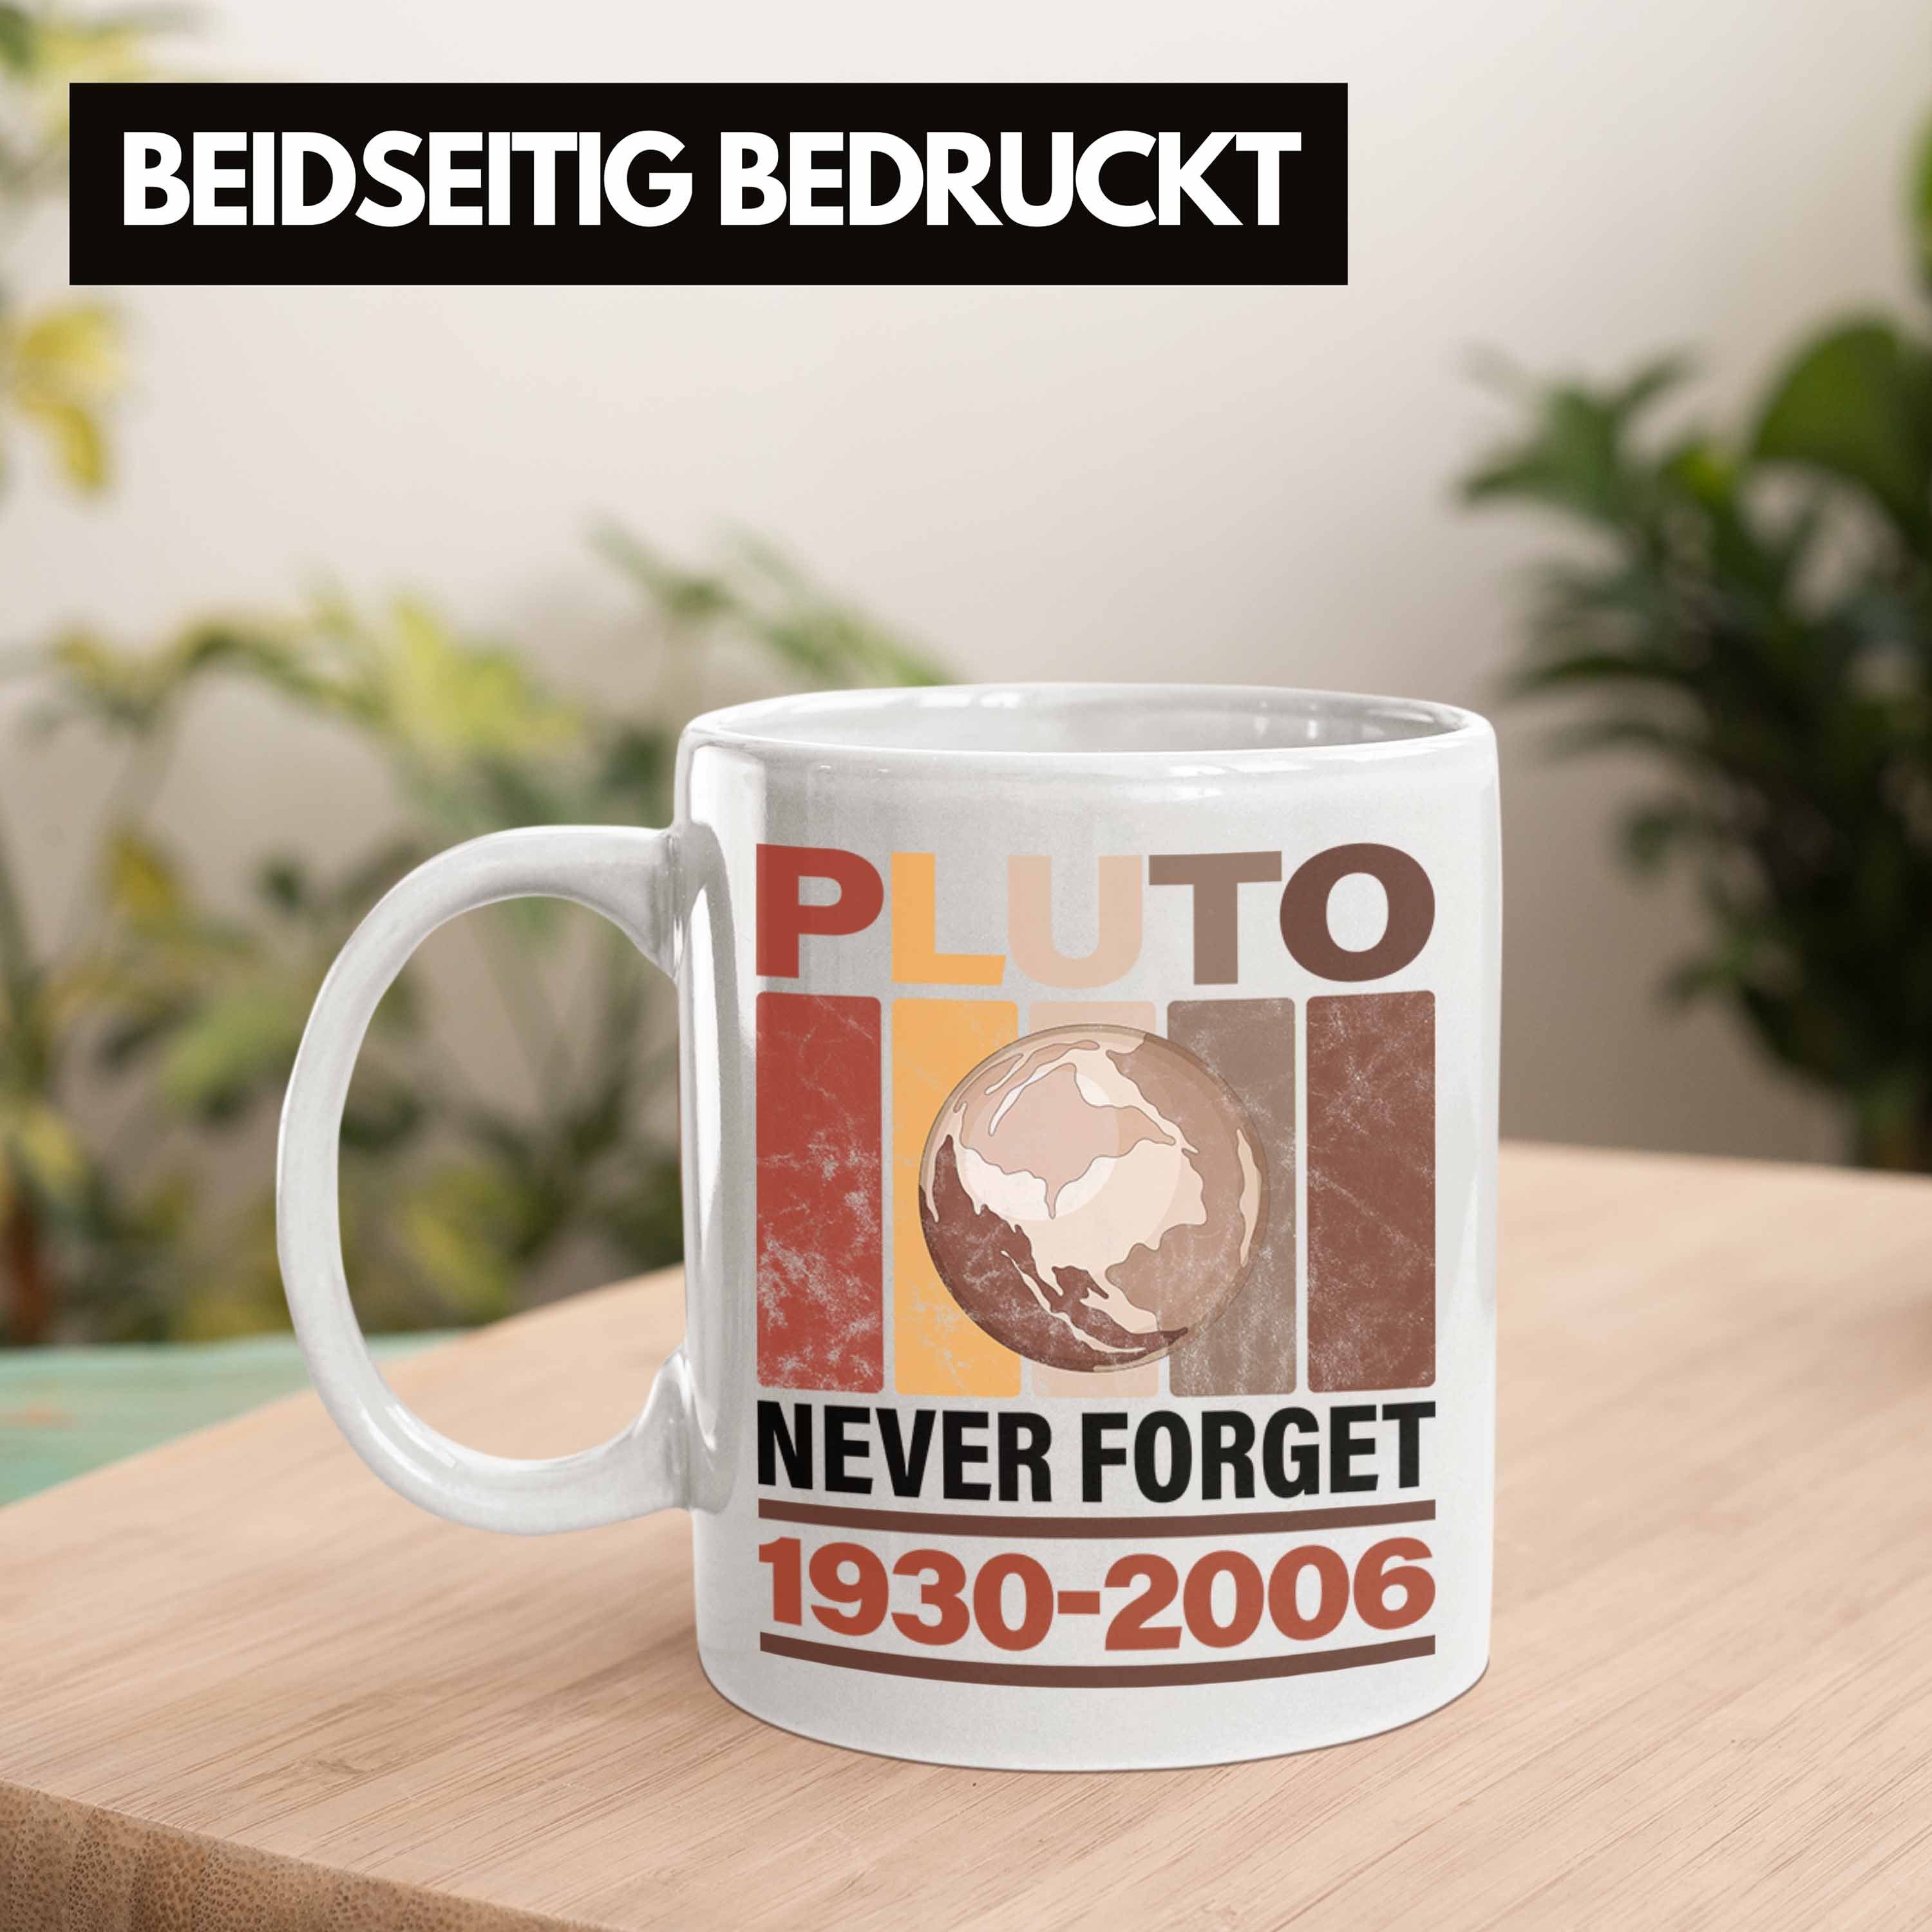 Trendation Tasse Lustige Tasse Weiss "Pluto Forget" Never Astronomie-Fans Geschenk